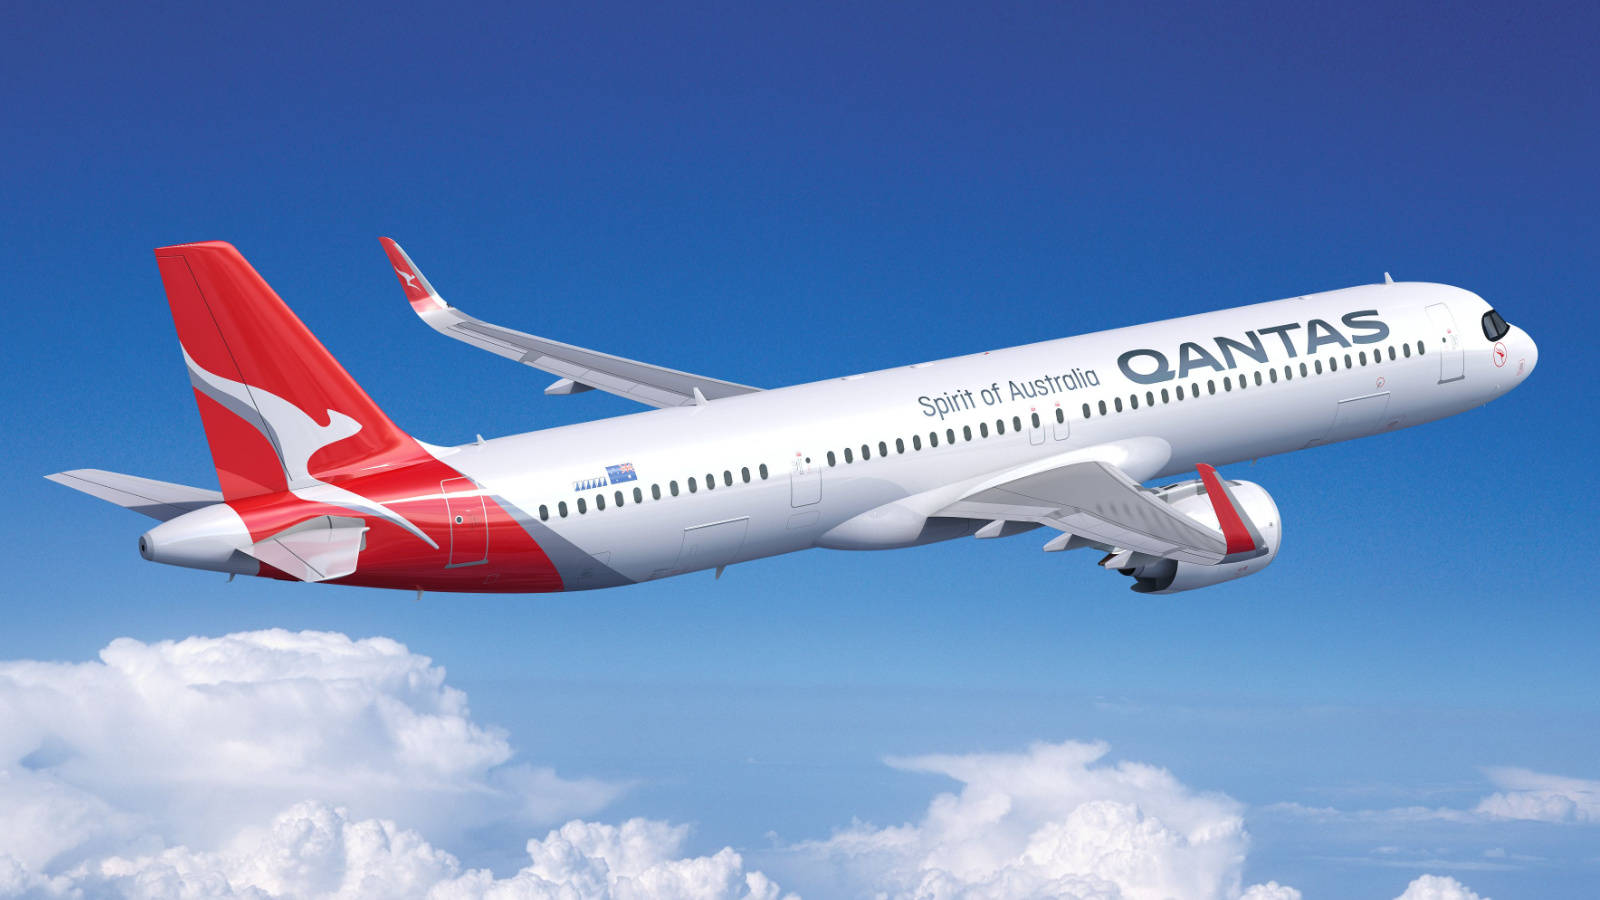 Qantasboeing 737 Flotte Am Himmel Wallpaper